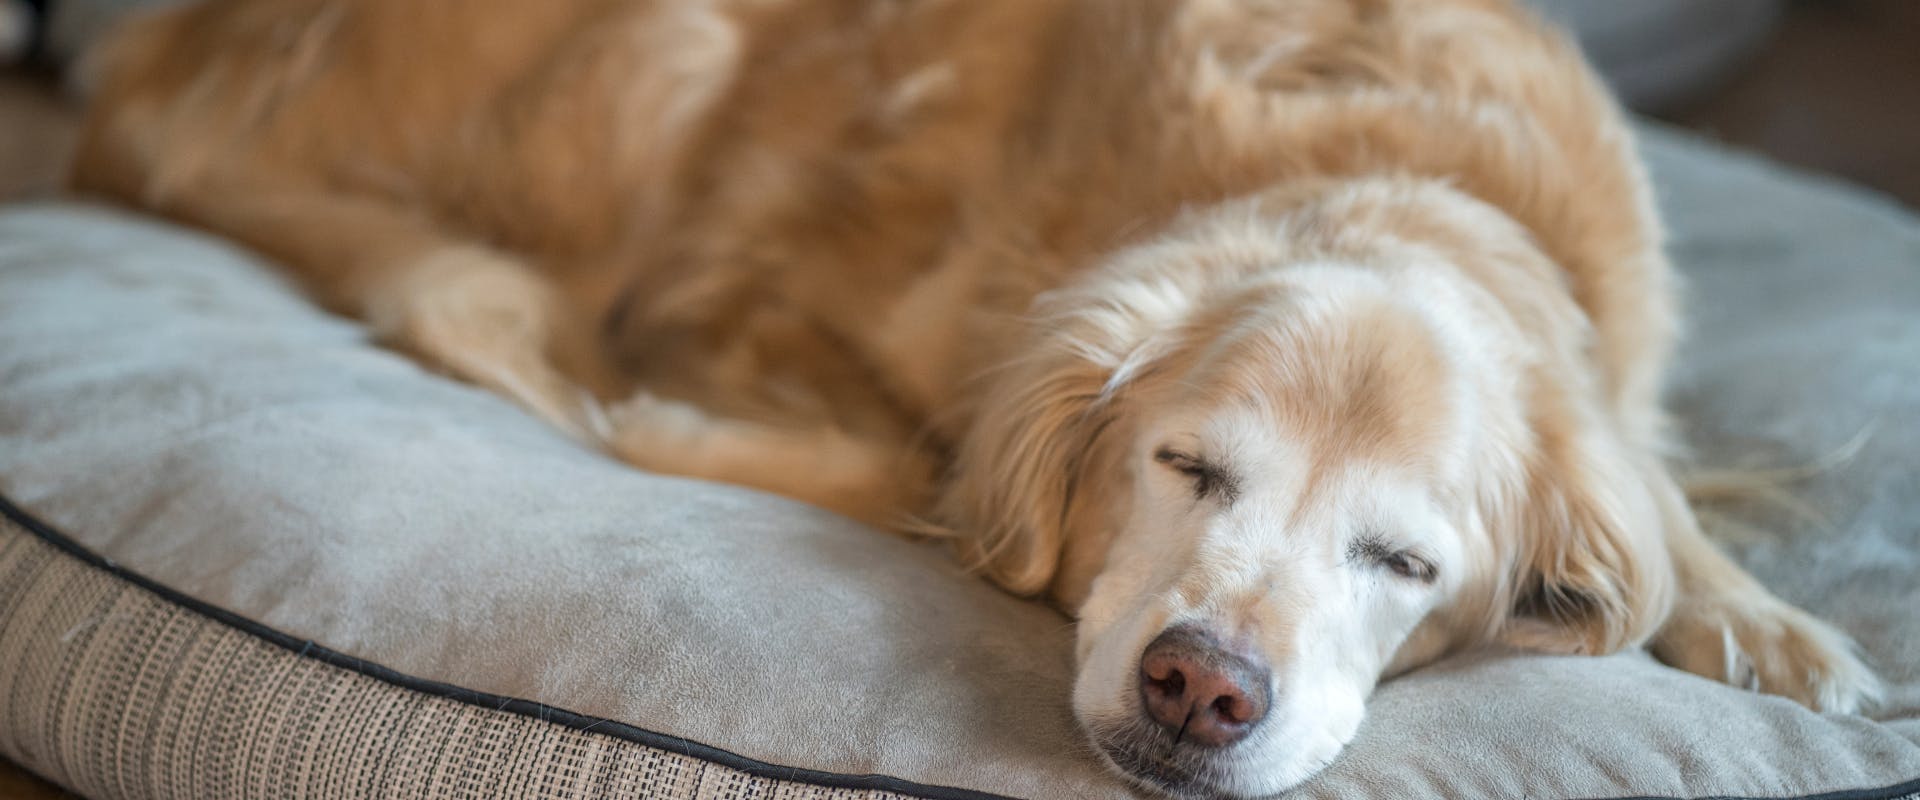 a sleeping elderly dog on a dog bed